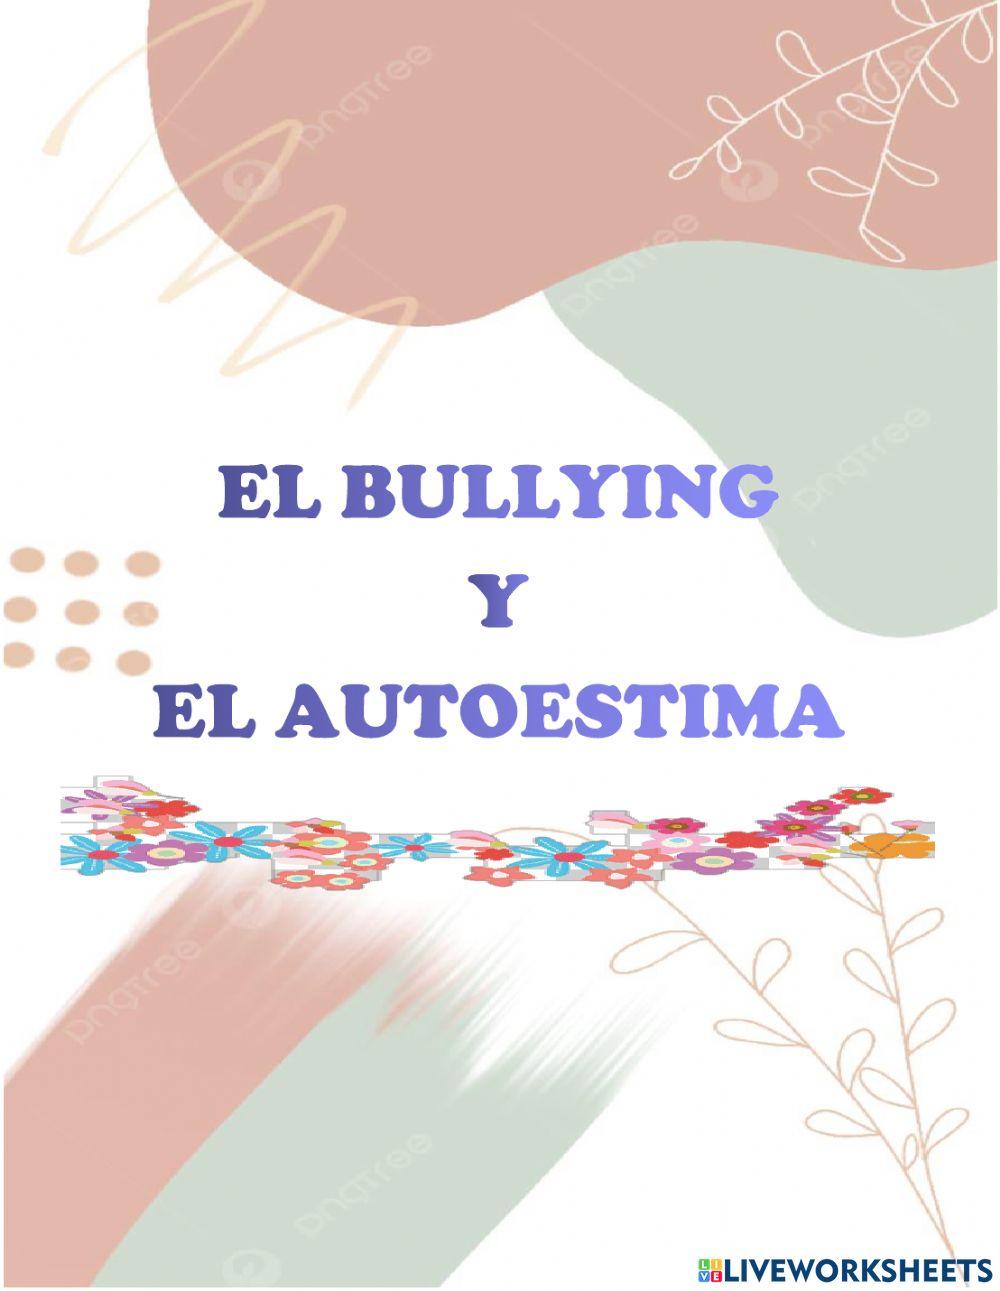 Bullying y autoestima